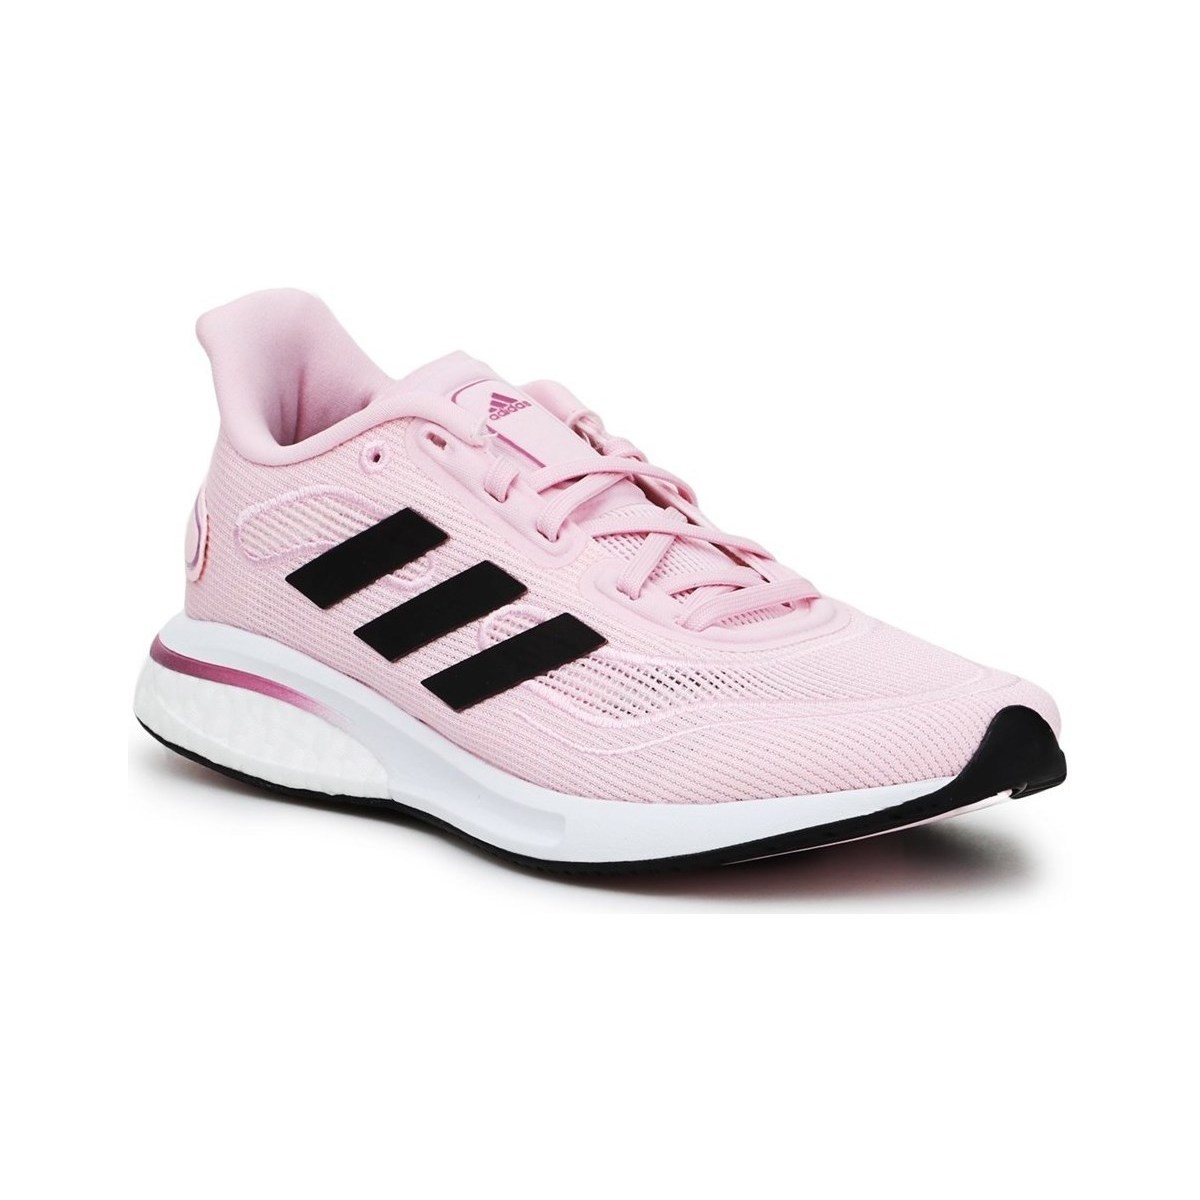 Boty Ženy Běžecké / Krosové boty adidas Originals Supernova W Růžová